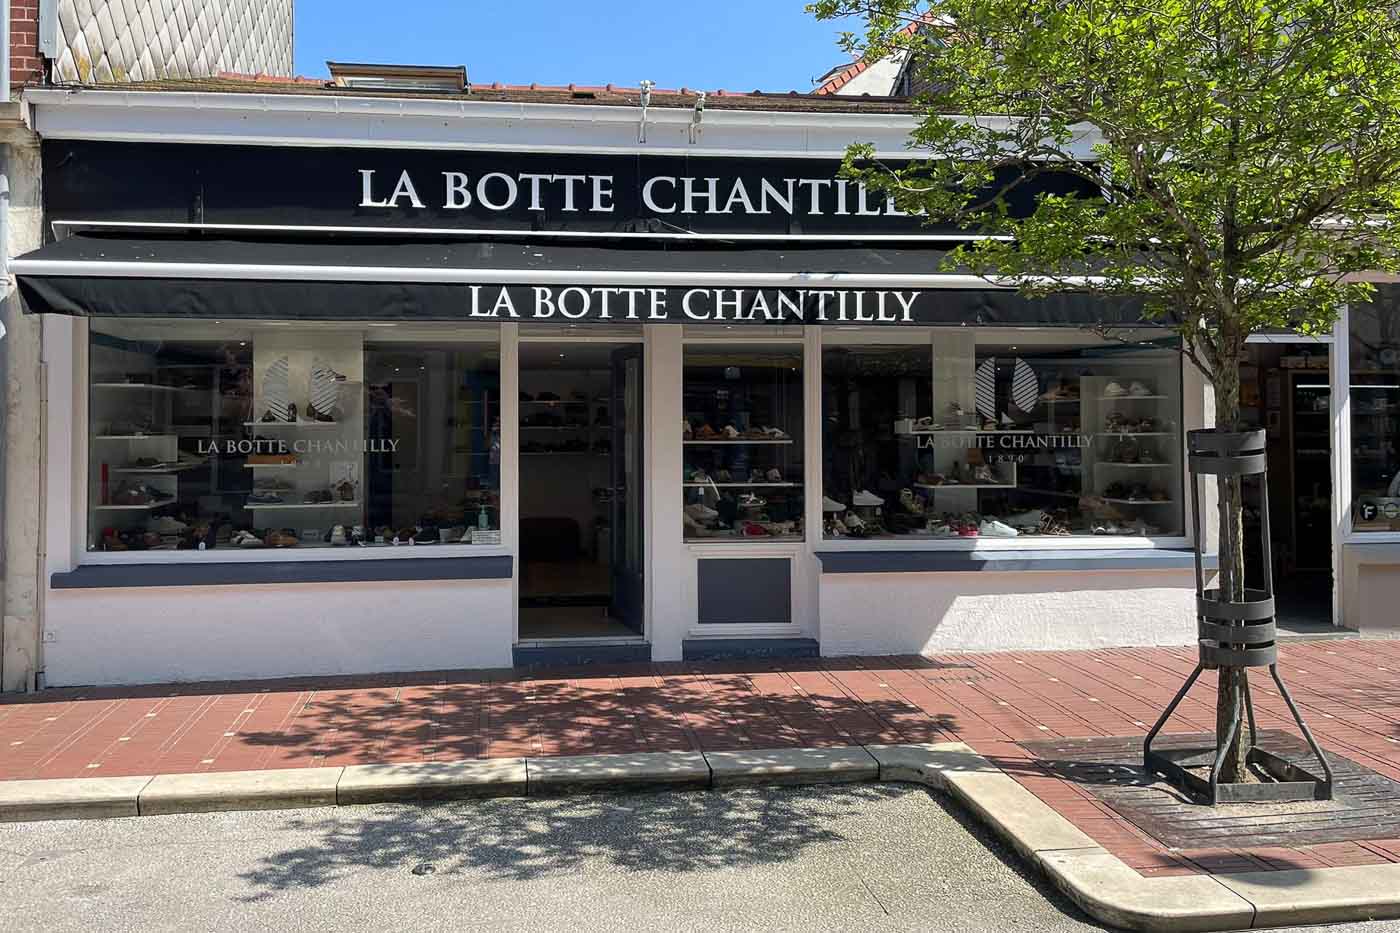 La Botte Chantilly Le Touquet - 91 rue de Metz